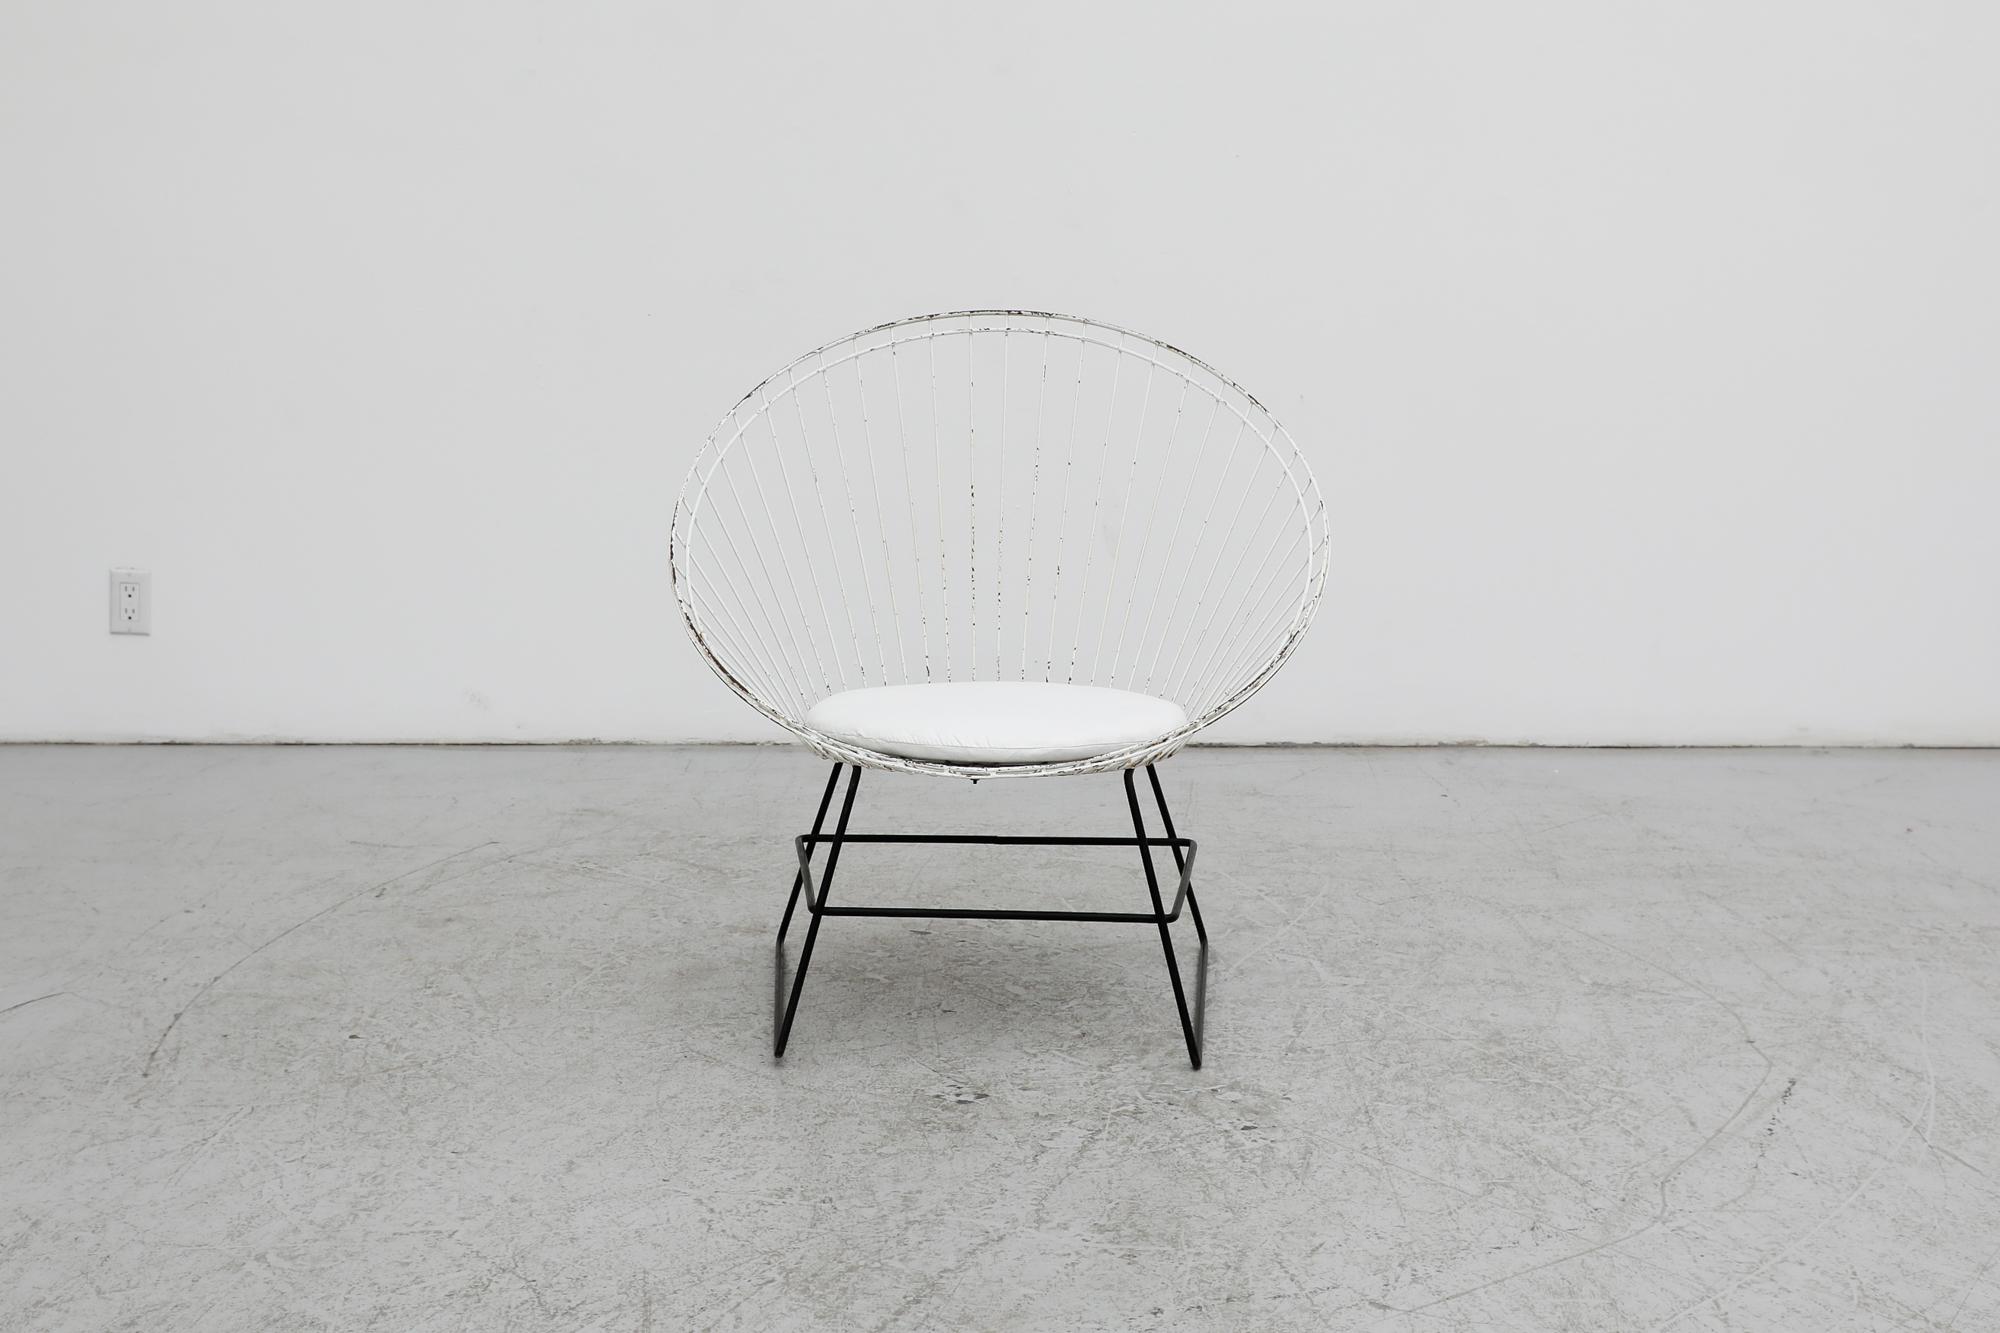 Seltener Stuhl 'Flamingo' von 1958, entworfen von Cees Braakman & Adriaan Dekker und hergestellt von Tomado für Pastoe. Eine sehr seltene Collaboration, aus der ein einzigartiges, wirklich wunderschönes Stück hervorging. Dieser Stuhl hat schwarze